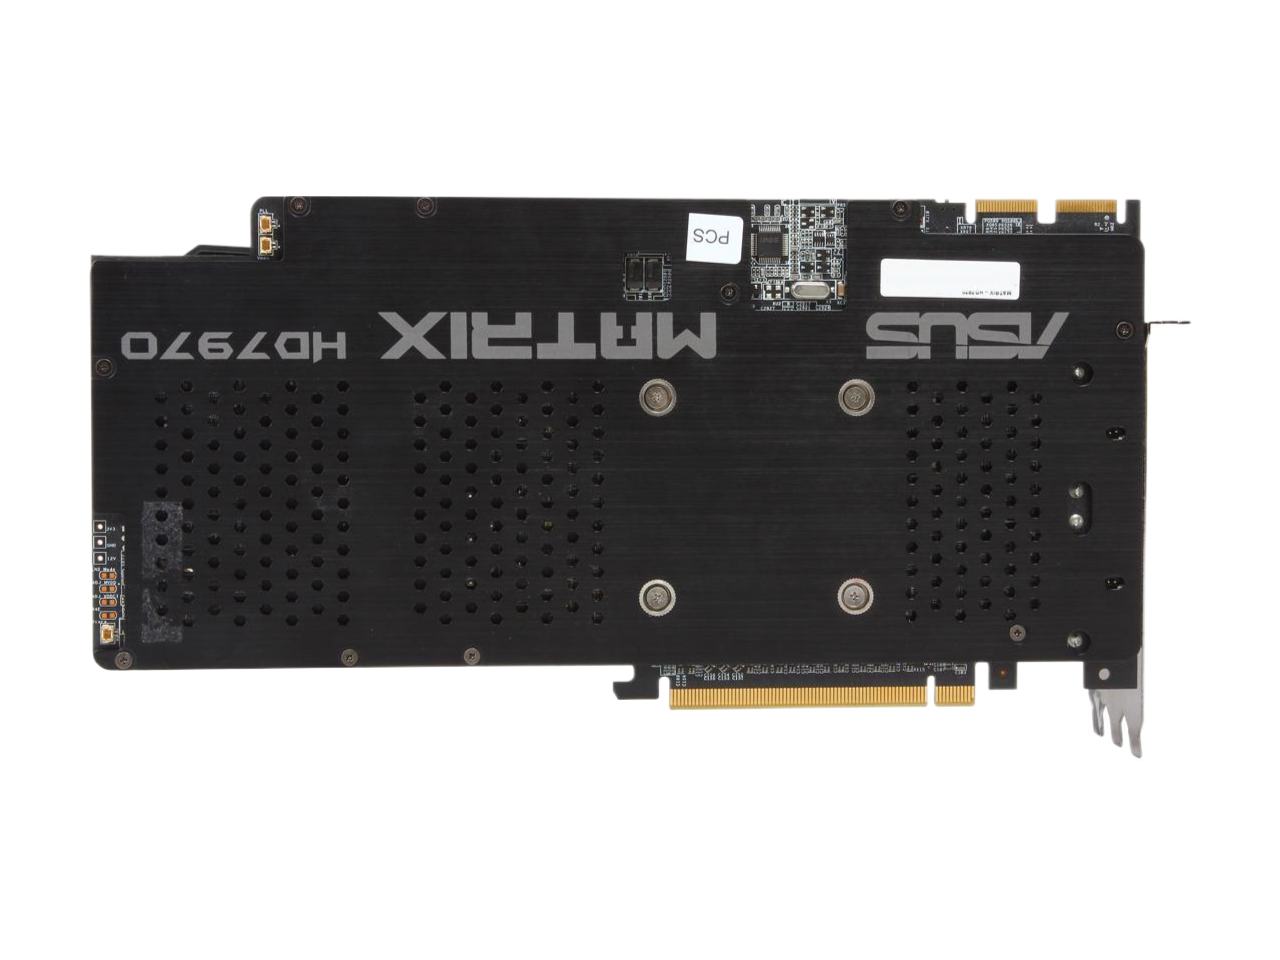 ASUS Radeon HD 7970 3GB GDDR5 PCI Express 3.0 x16 CrossFireX Support Video Card HD7970-DC2T-3GD5